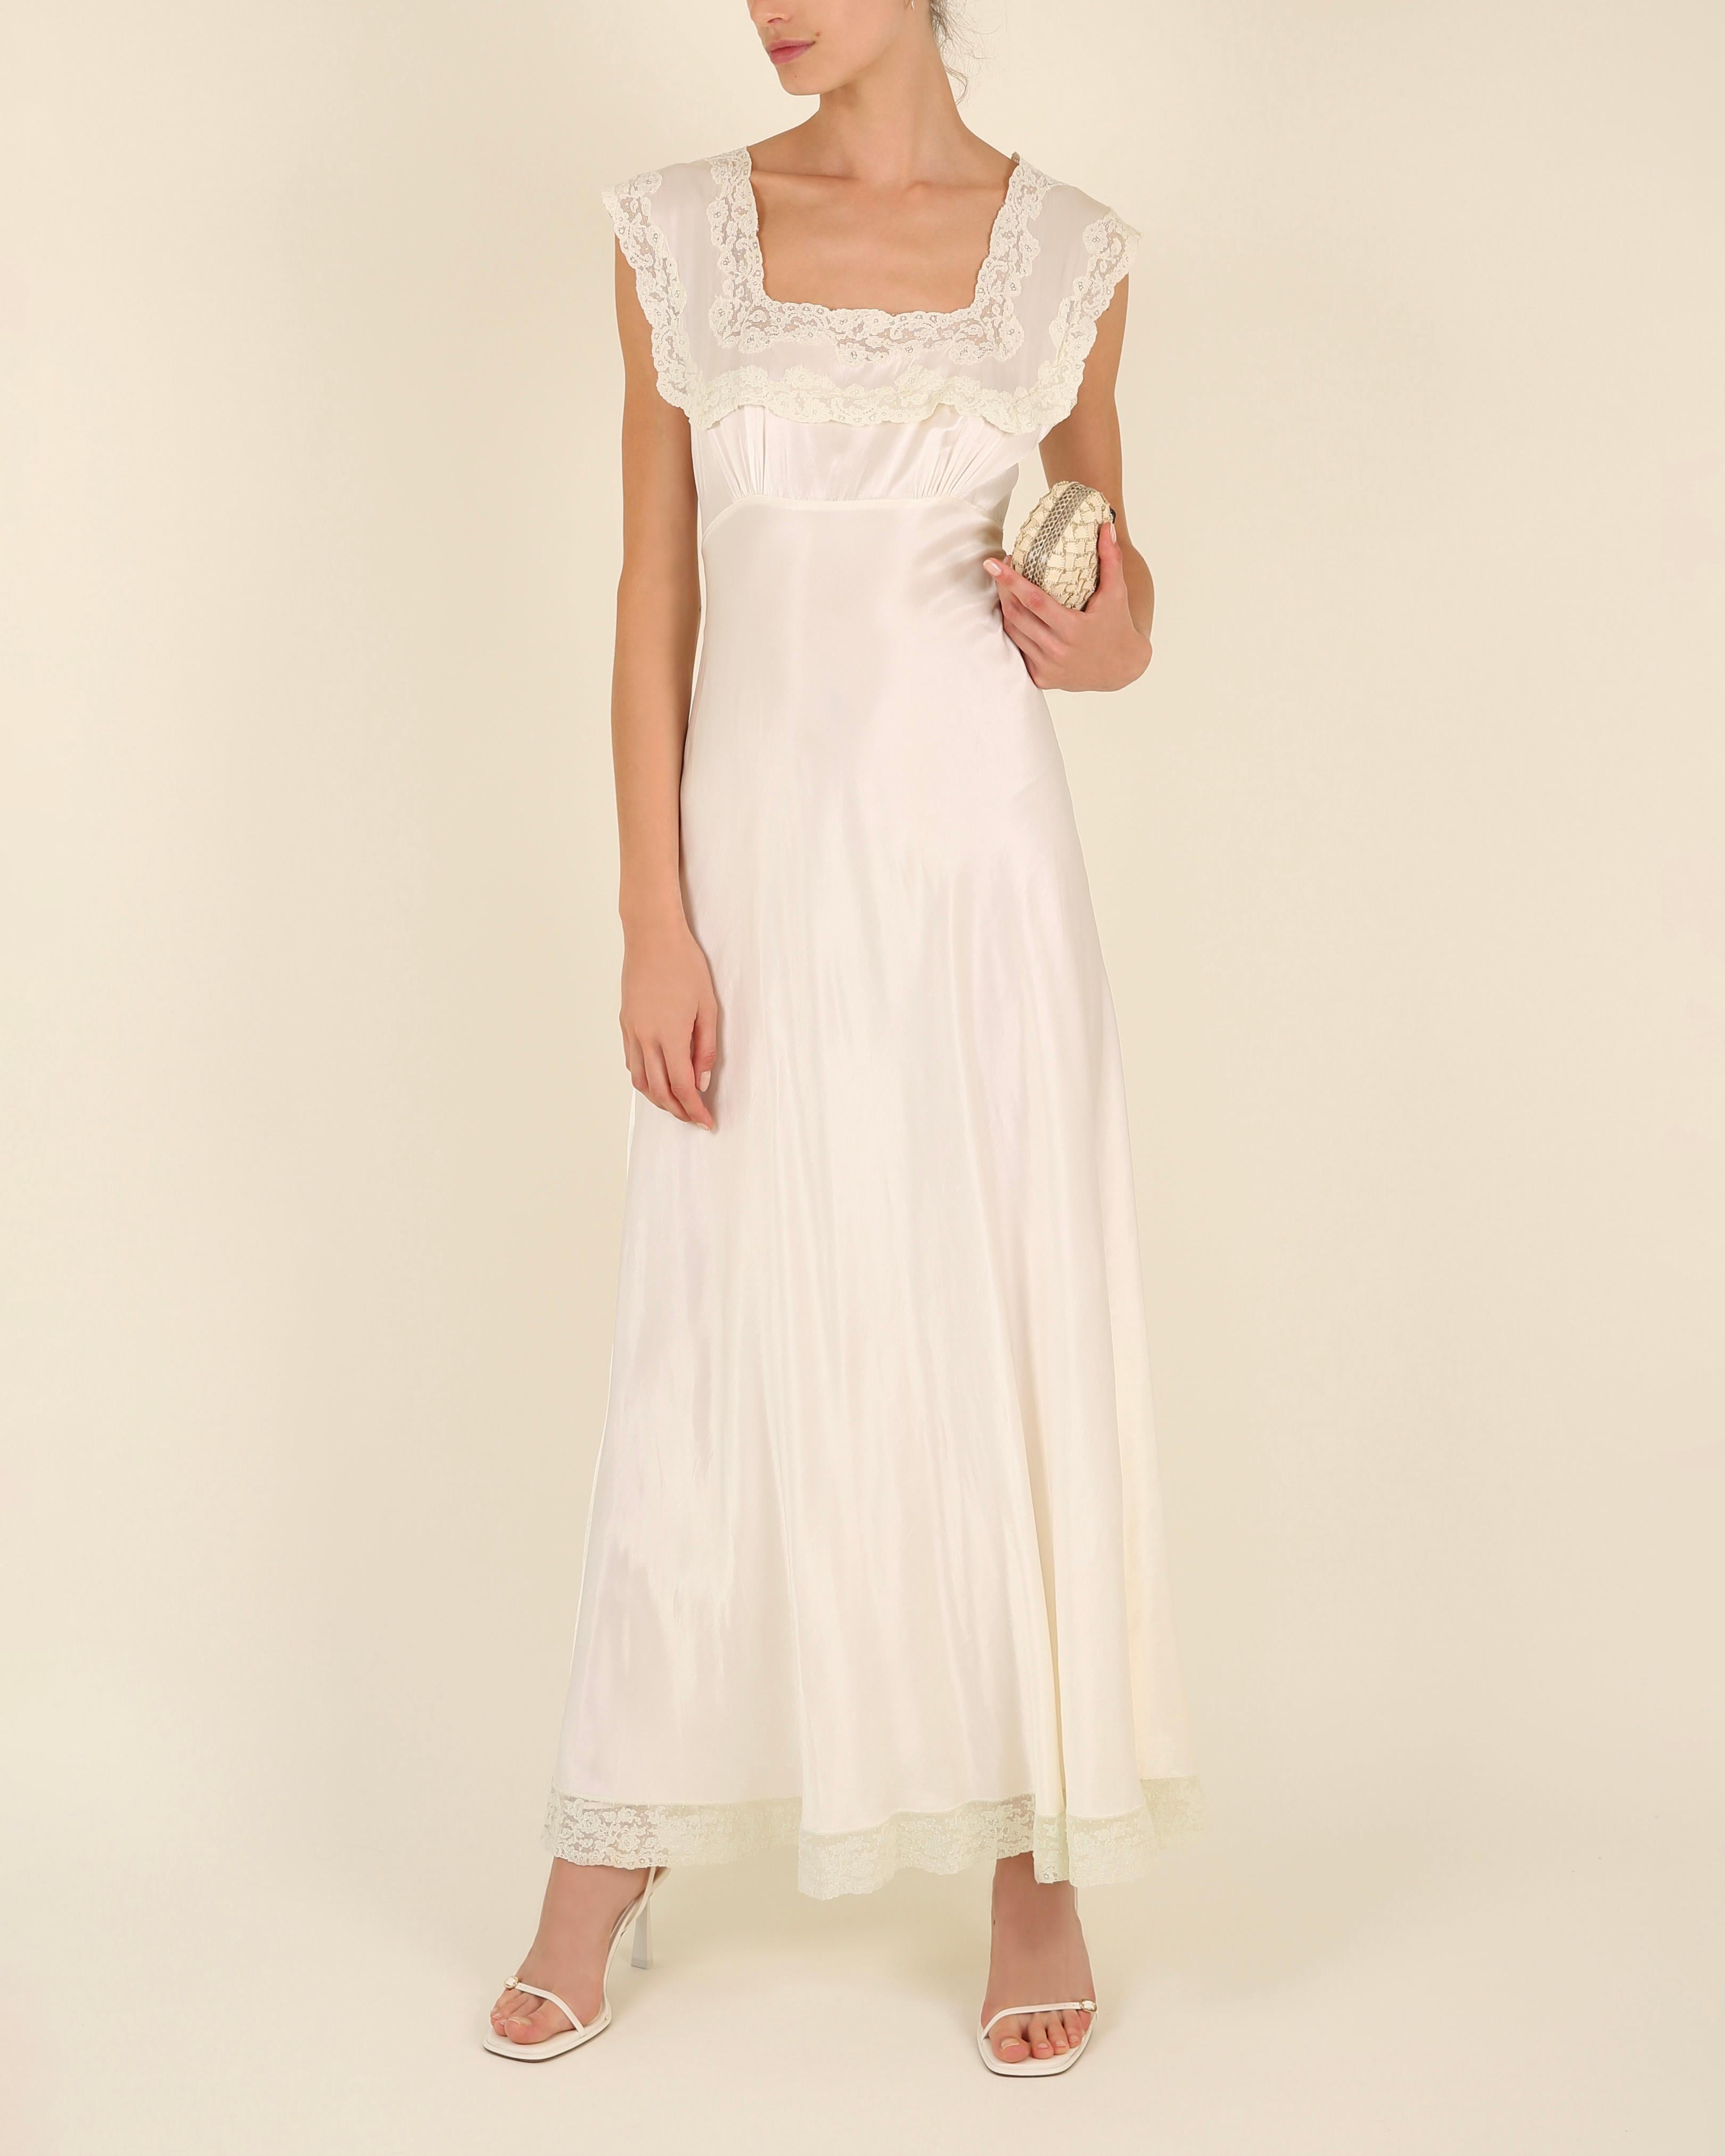 Heavenly Fischer vintage 40s silk white ivory lace wedding night gown slip dress 7